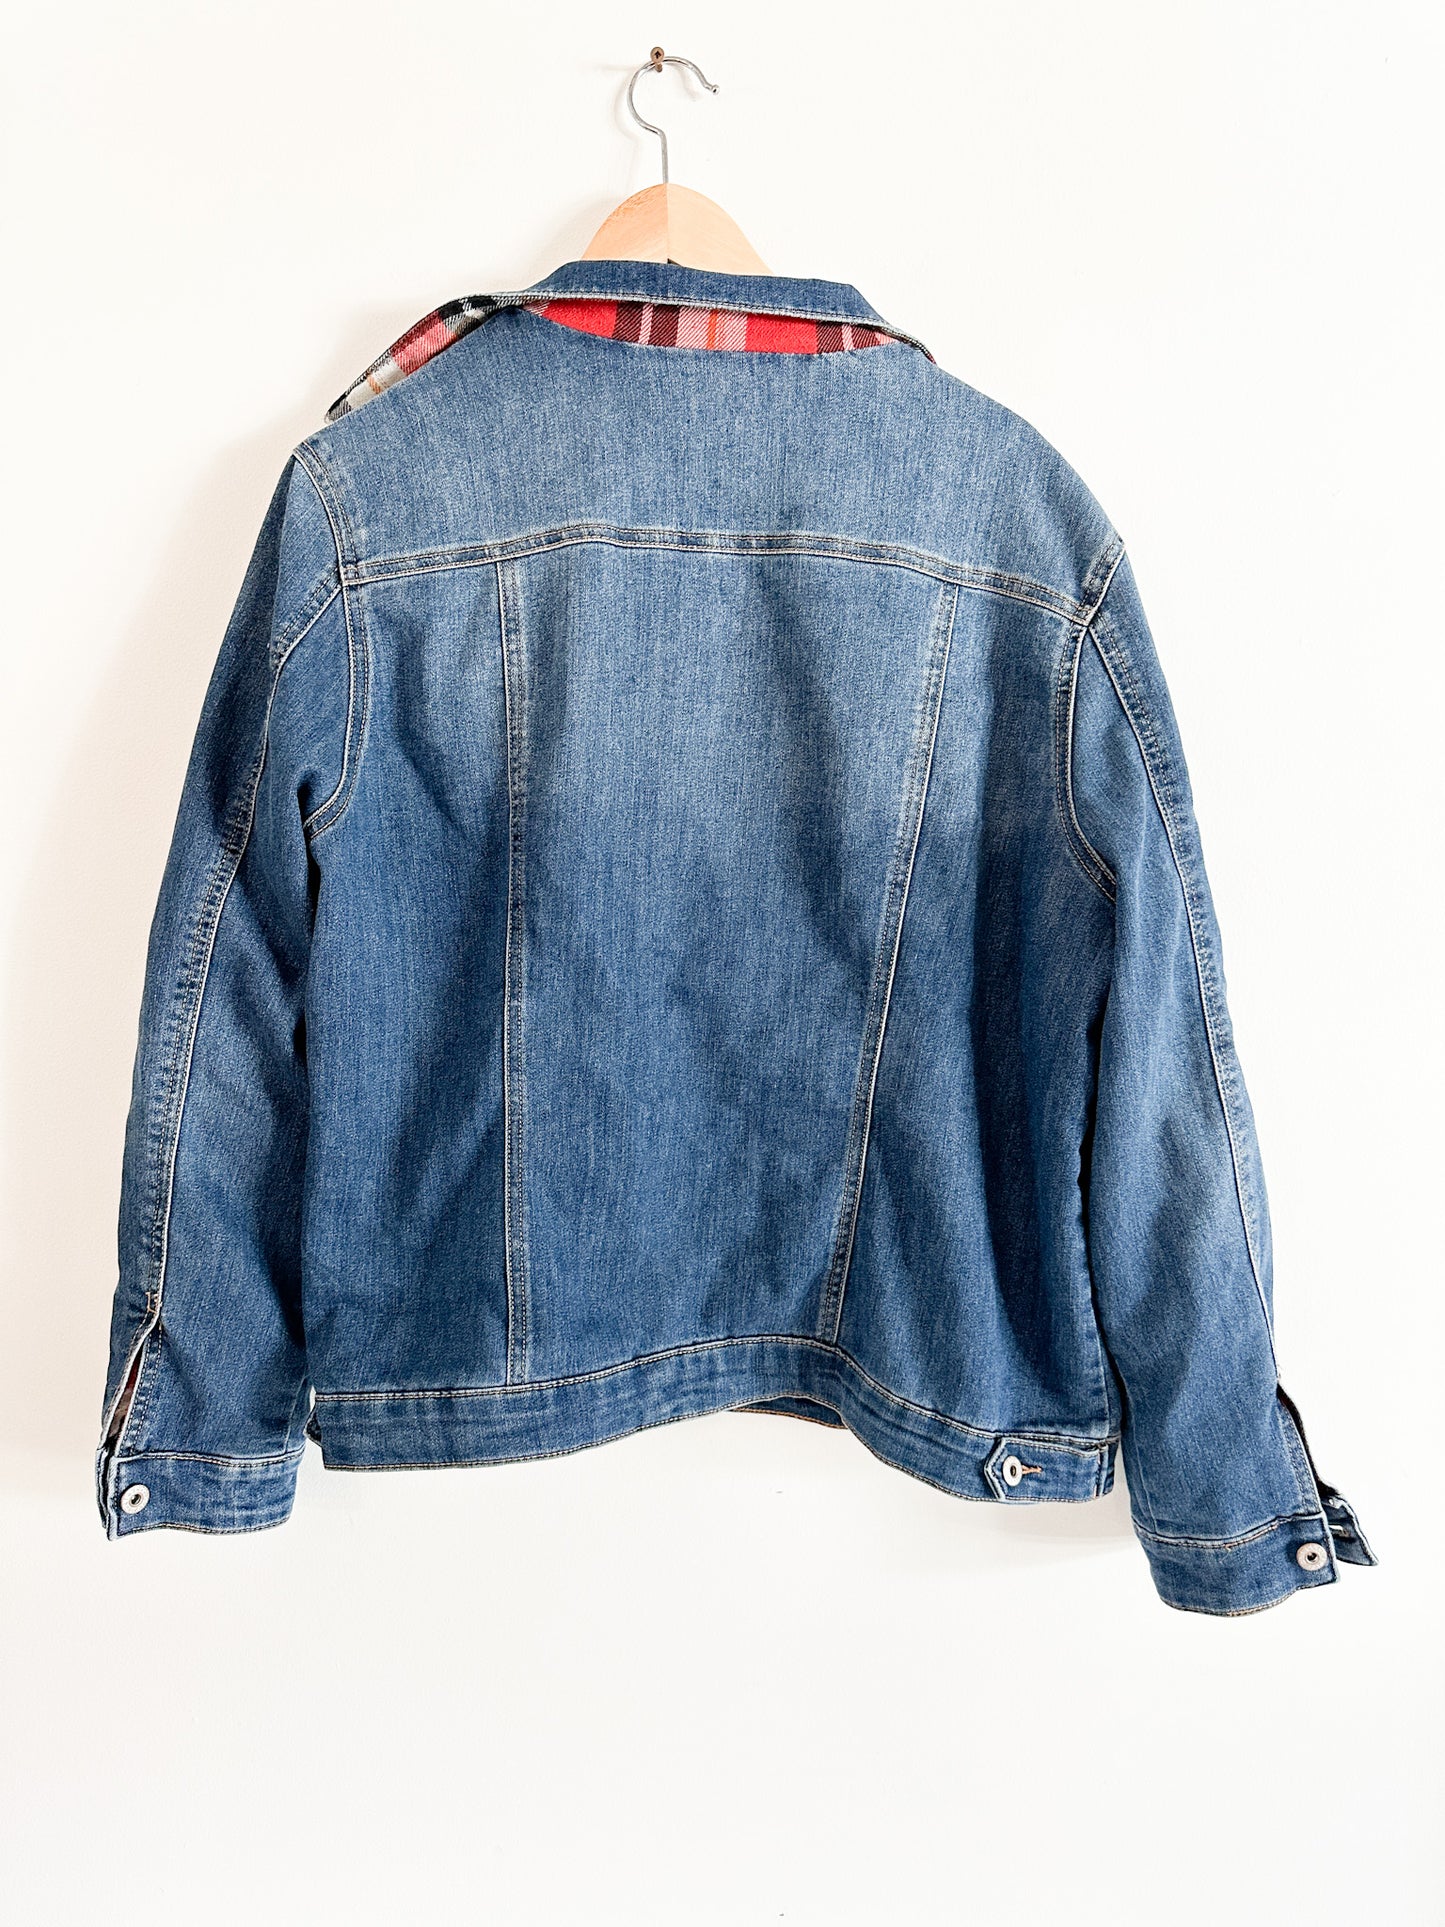 Parasuco Denim Jacket with Plaid Lining| Vintage Jean Jacket with Plaid Lining | Winter Jean Jacket | Size: XXL| Plus Size Jean Jacket